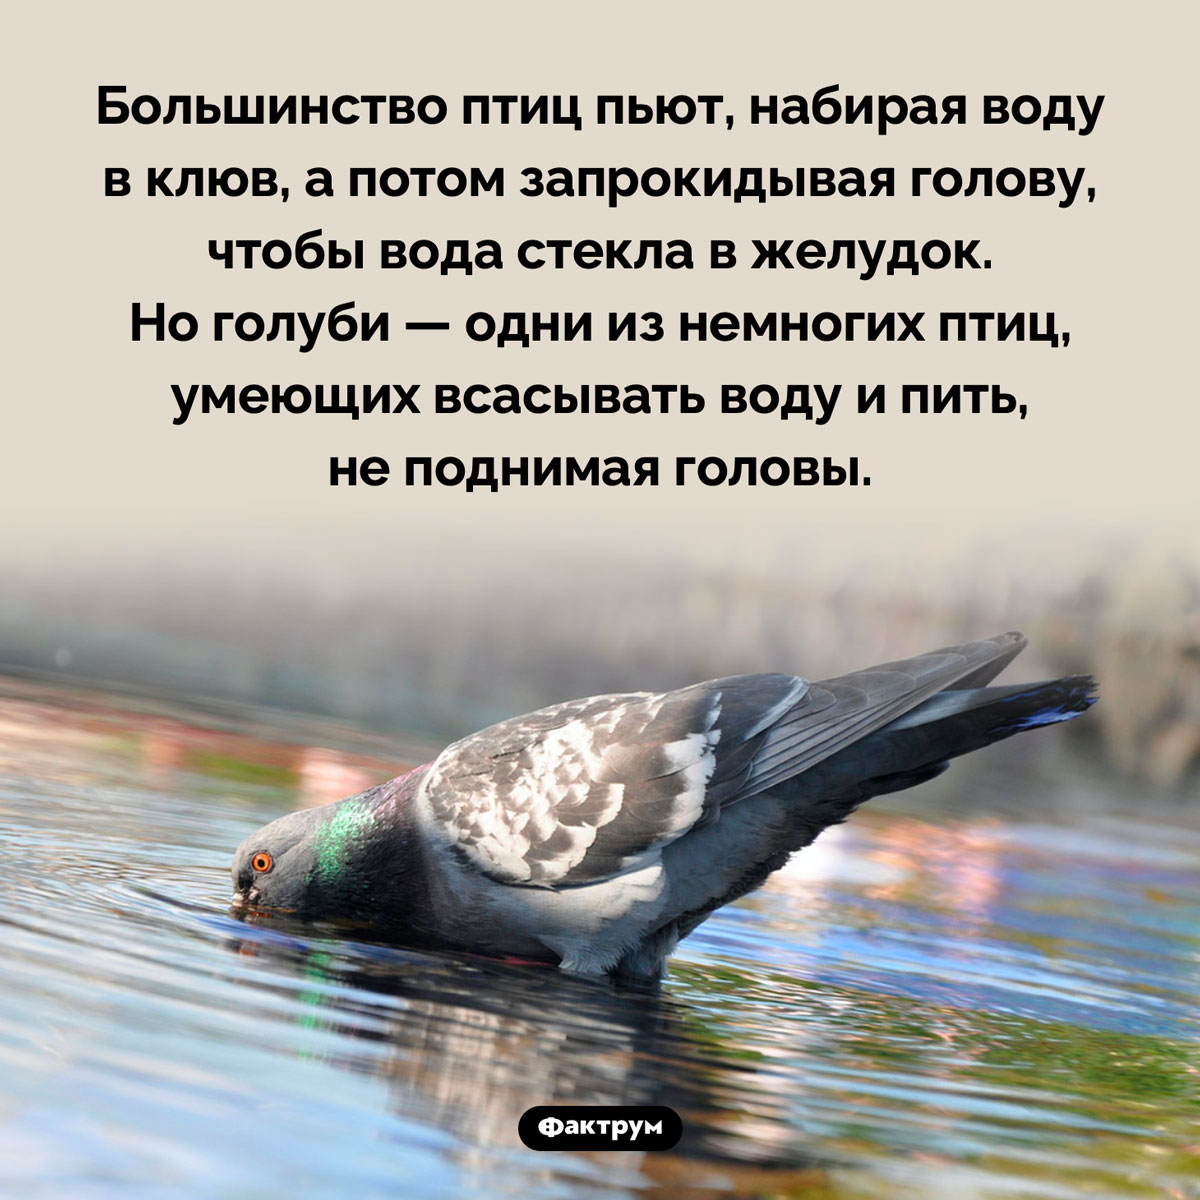 Как пьют голуби. Большинство птиц пьют, набирая воду в клюв, а потом запрокидывая голову, чтобы вода стекла в желудок. Но голуби — одни из немногих птиц, умеющих всасывать воду и пить, не поднимая головы.